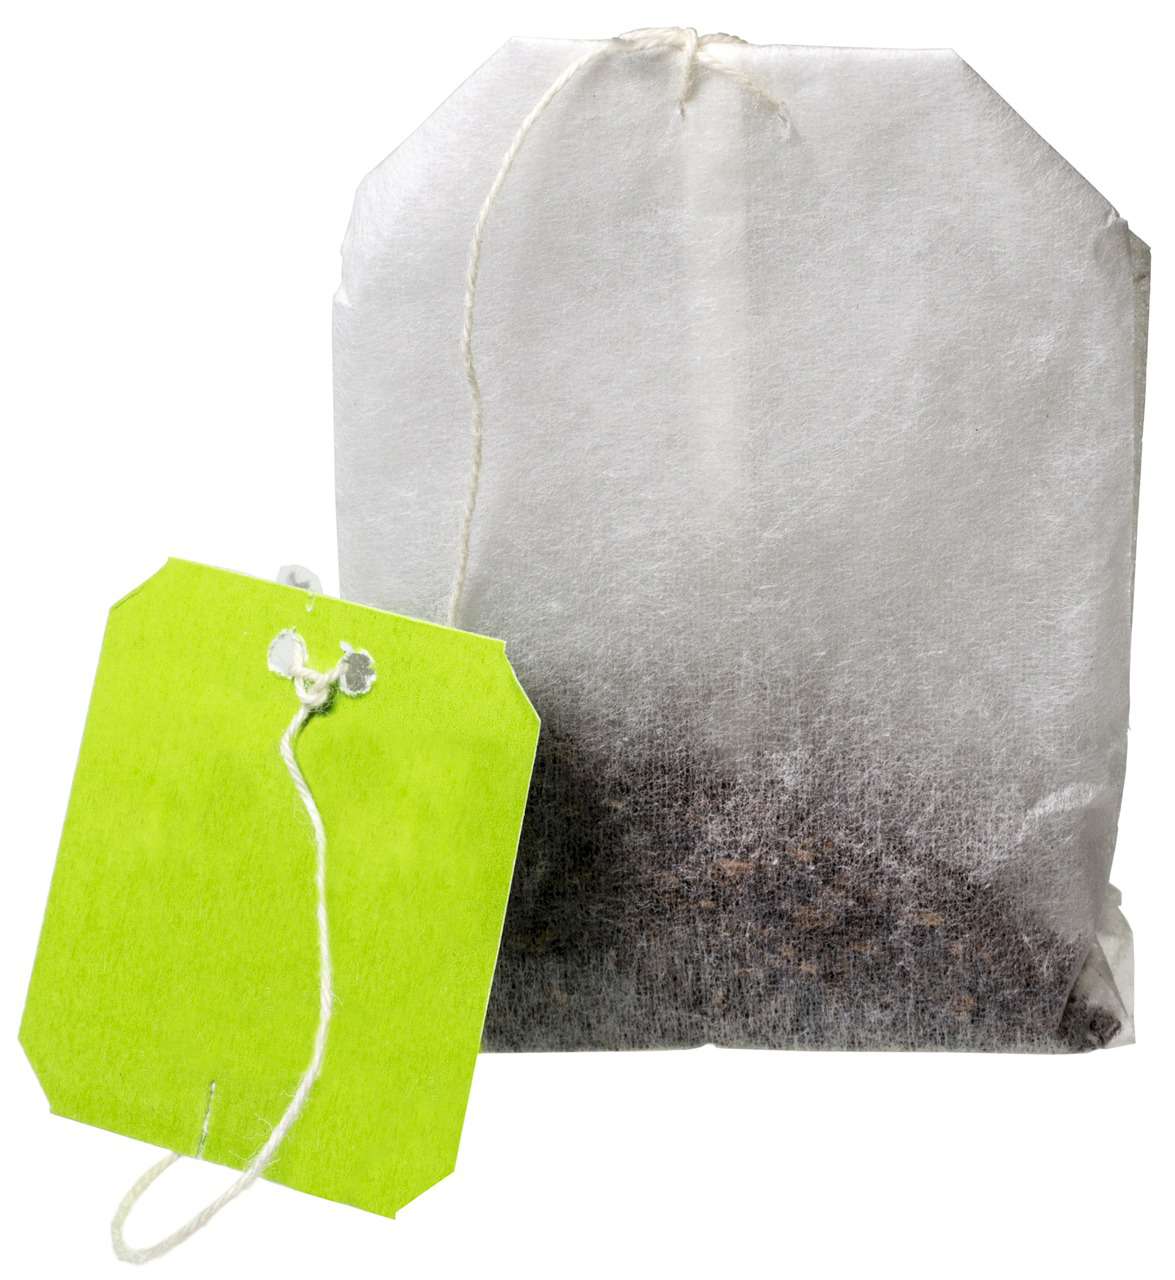 10 astuces originales pour utiliser vos sachets de thé usagés - Au